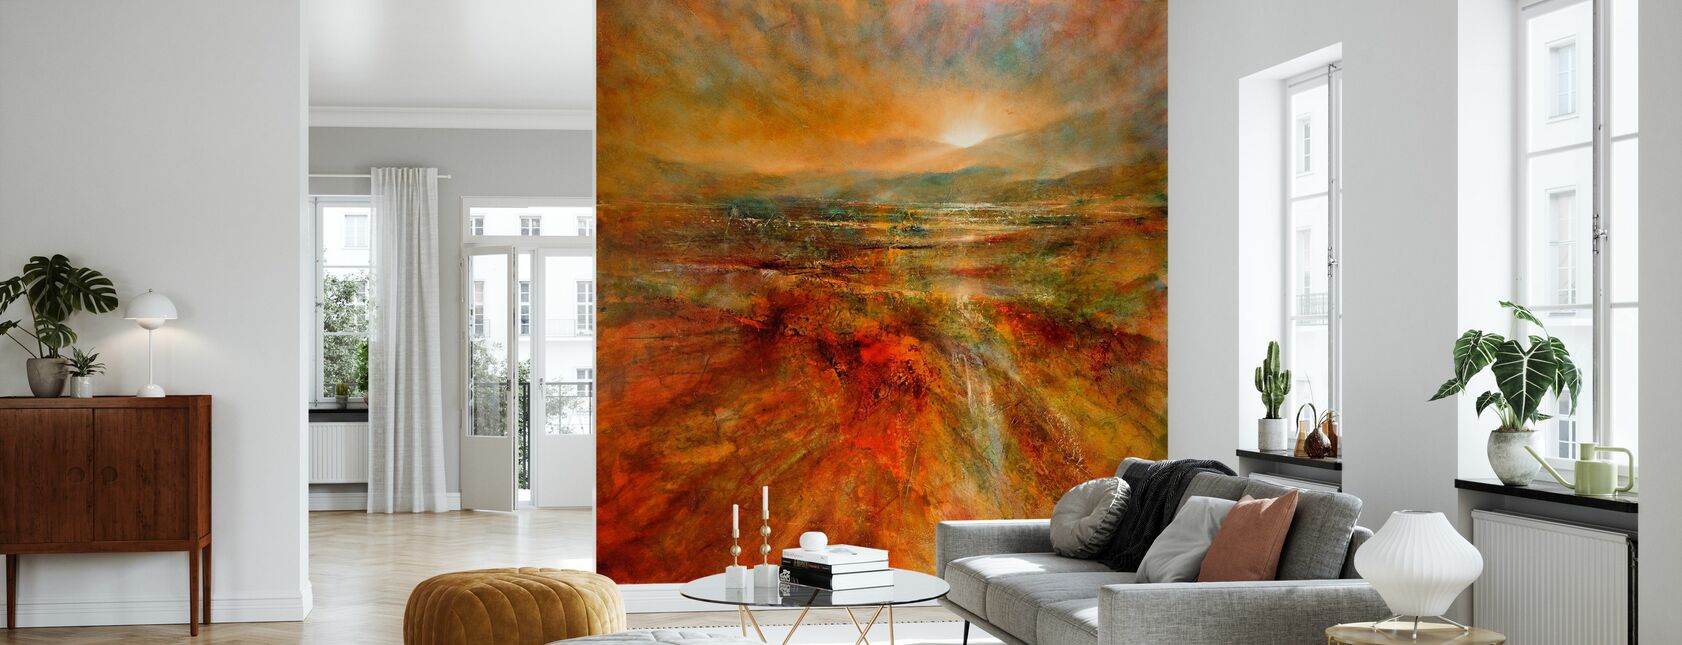 Sunrise - Wallpaper - Living Room